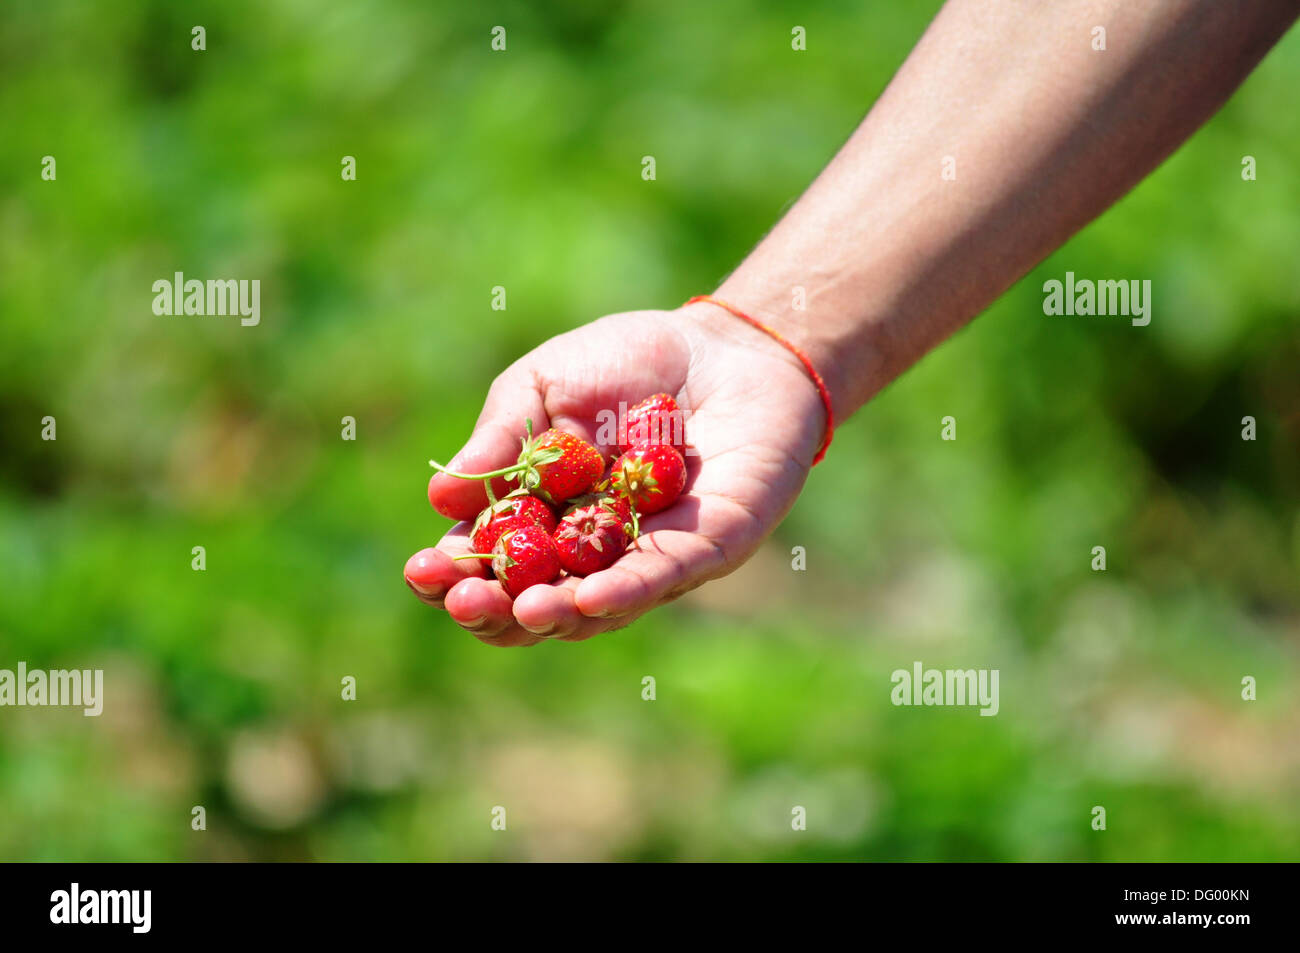 Cueillir des fraises dans une journée ensoleillée. Avec l'arrivèe du printemps fraises mûres fraîches sont disponibles pour la préparation à l'U-Pick de fermes. Banque D'Images